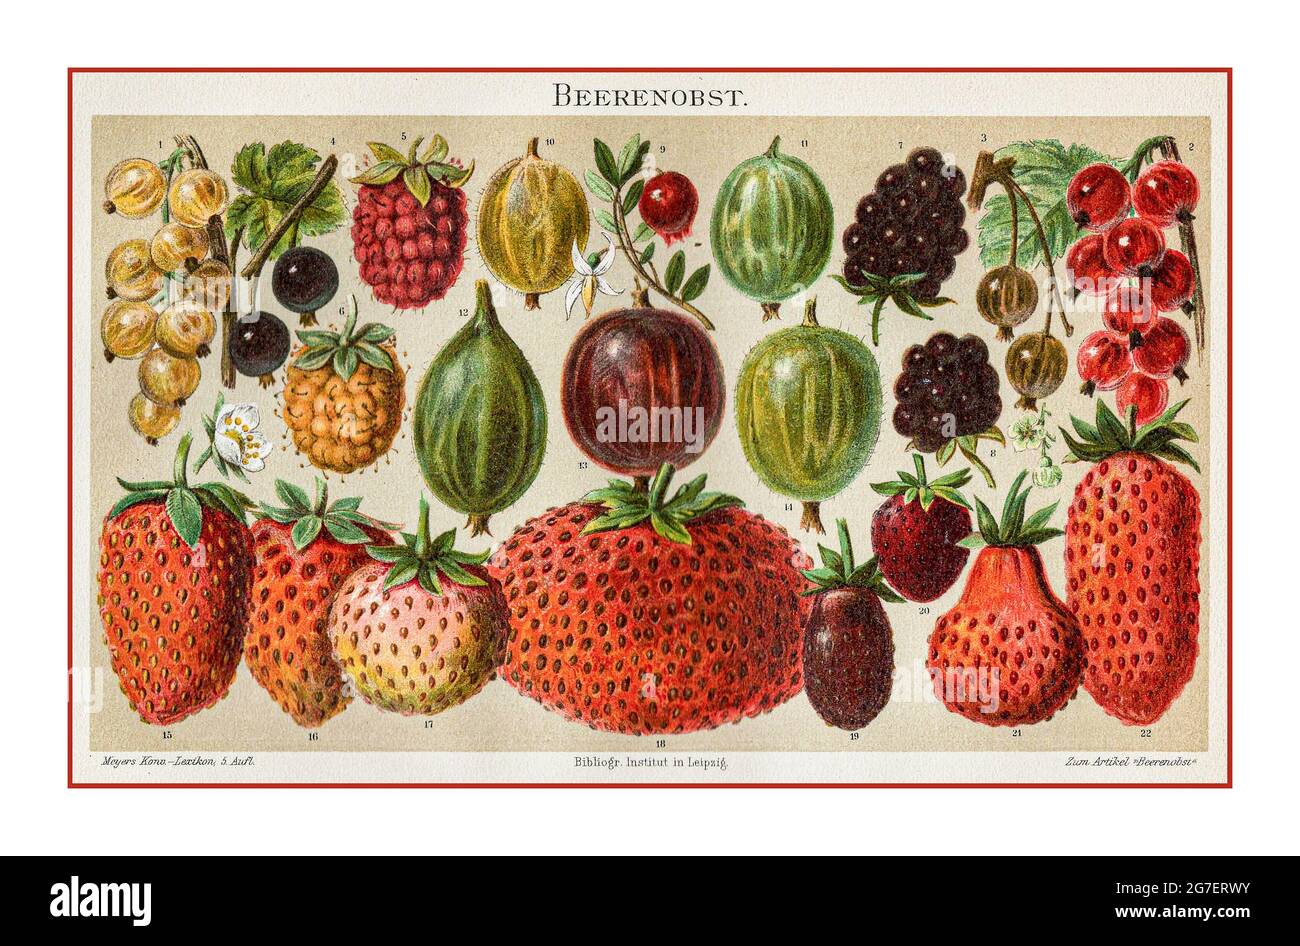 BEEREN VINTAGE „BEERENOBST“ LITHOGRAPH 1800 ILLUSTRATION GARTENFRÜCHTE Vintage Botany, Beeren, verschiedene Sorten, 1-4 Johannisbeere (Ribes), 5-6 Himbeere (Rubus idaeus), 6-8 Brombeere (Rubus fruticosus), 9 Cranberry (Vaccinium oxyccosus), 10-14 Stachelbeere (Ribes), 15-22-Crispa-Erdbeere (Fragika), Crispa (Farbe), ugikaria, 1880) Stockfoto